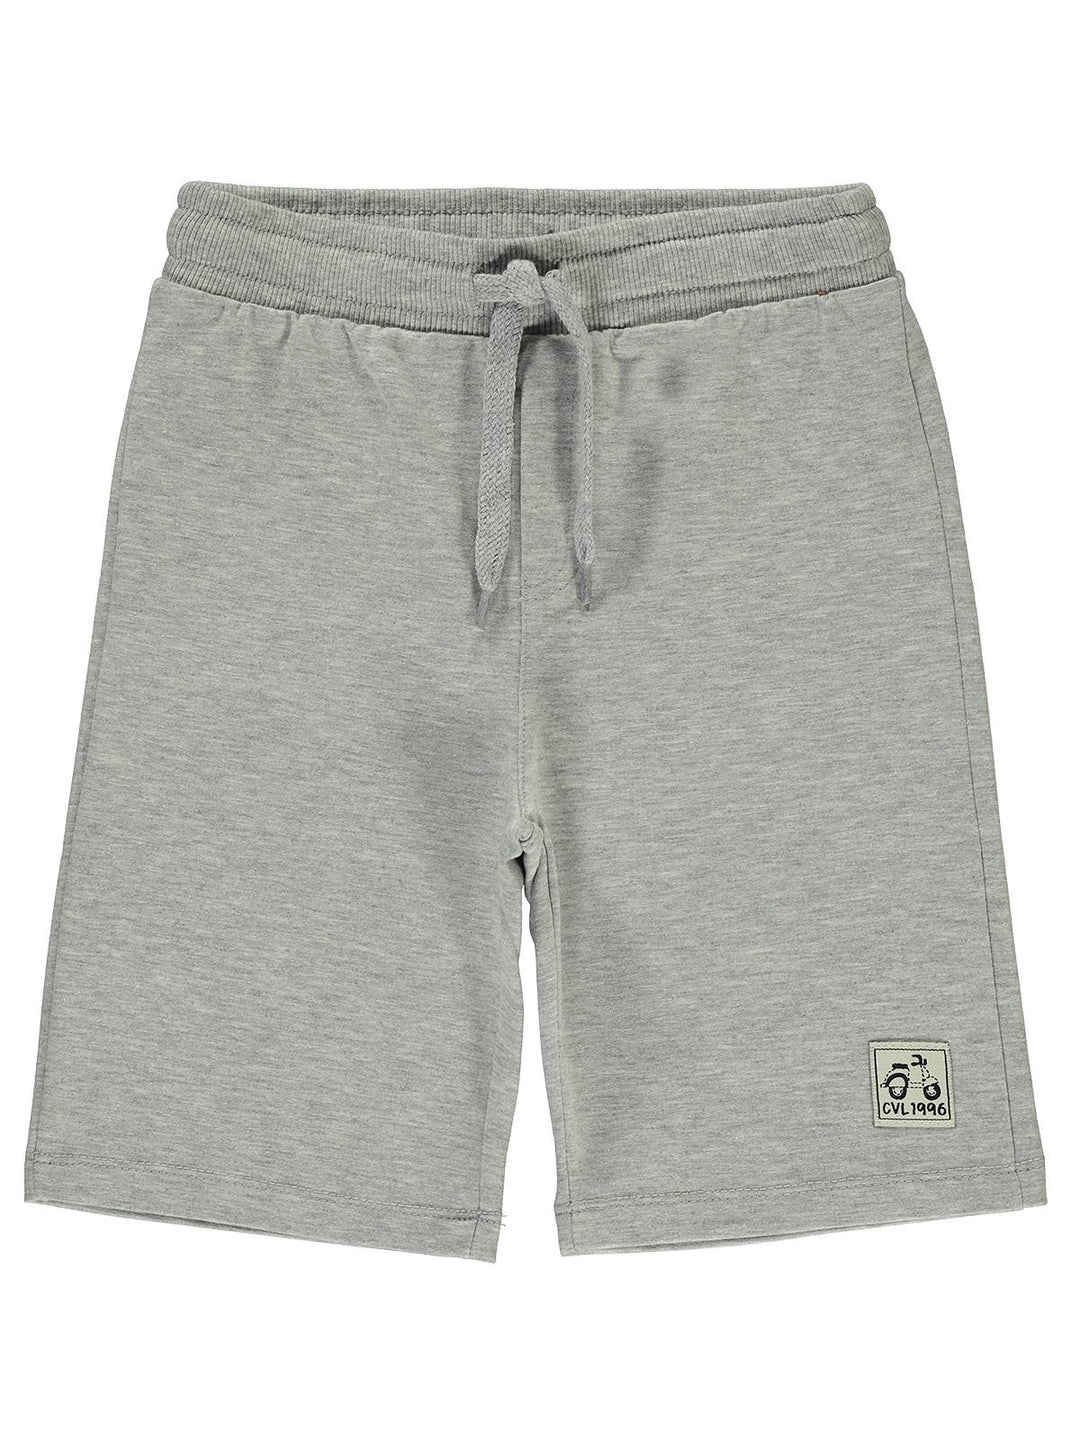 Civil Boys Cotton Shorts #D932-1 (S-22)